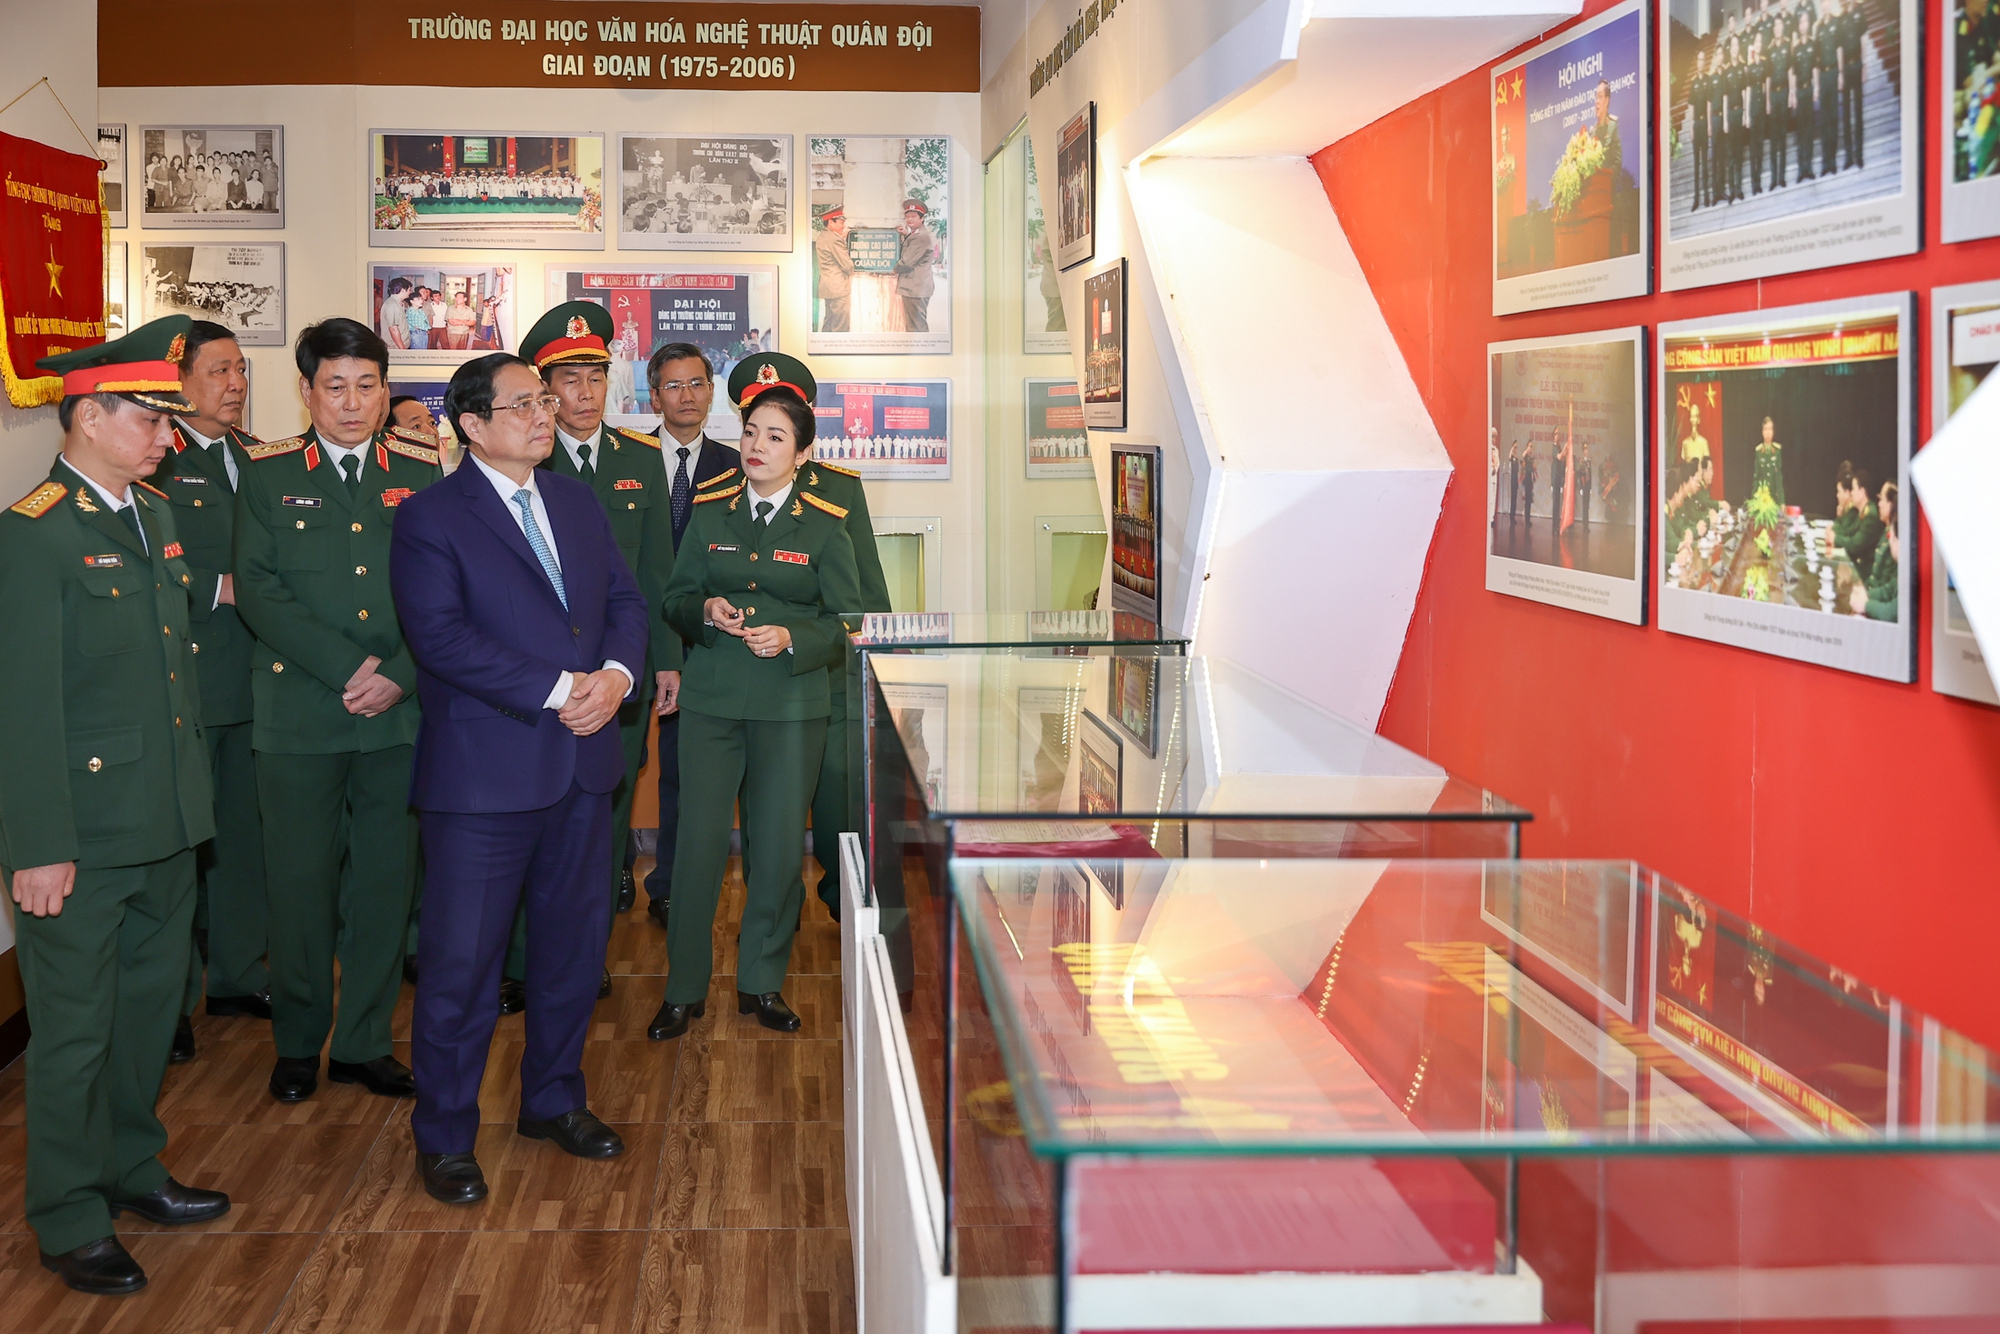 Thủ tướng thăm phòng truyền thống của Trường Đại học Văn hóa nghệ thuật Quân đội - Ảnh: VGP/Nhật Bắc